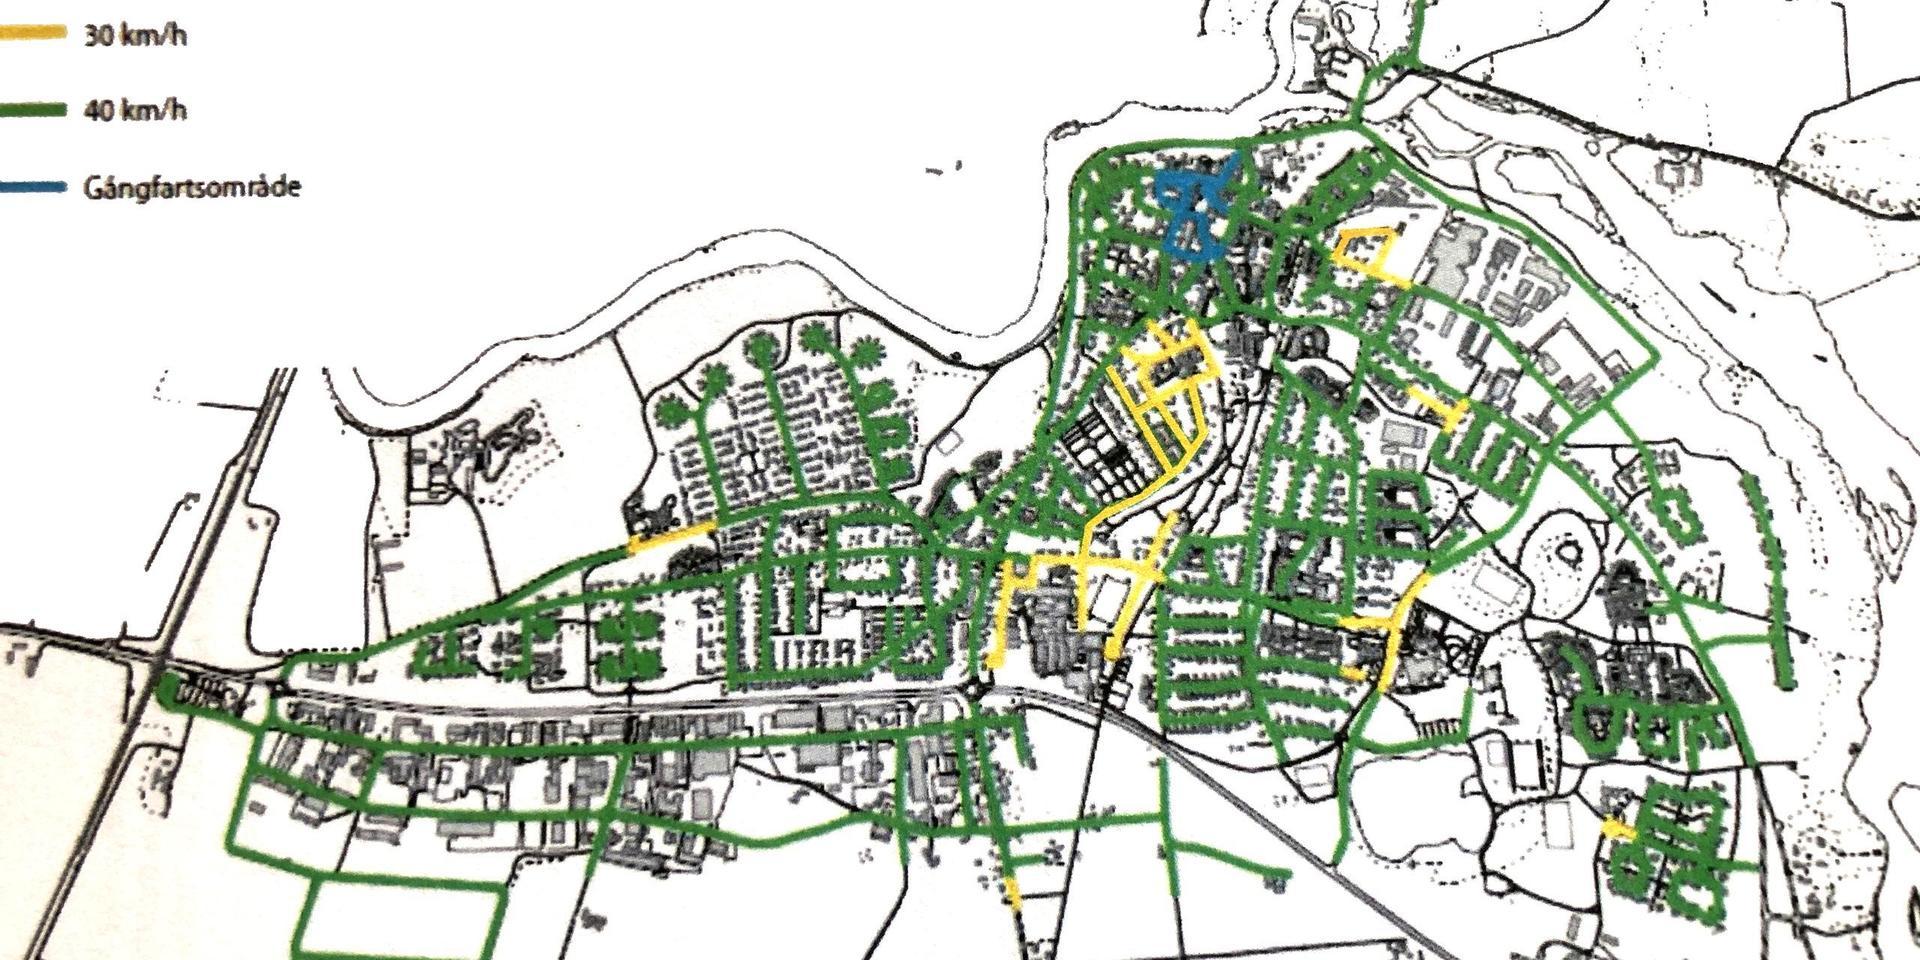 Högsta tillåtna hastighet i Laholms stad blir på de grönmarkerade gatorna 40 och på de gula 30 kilometer i timmen. De blå är gångfartsområdet i stadskärnan.